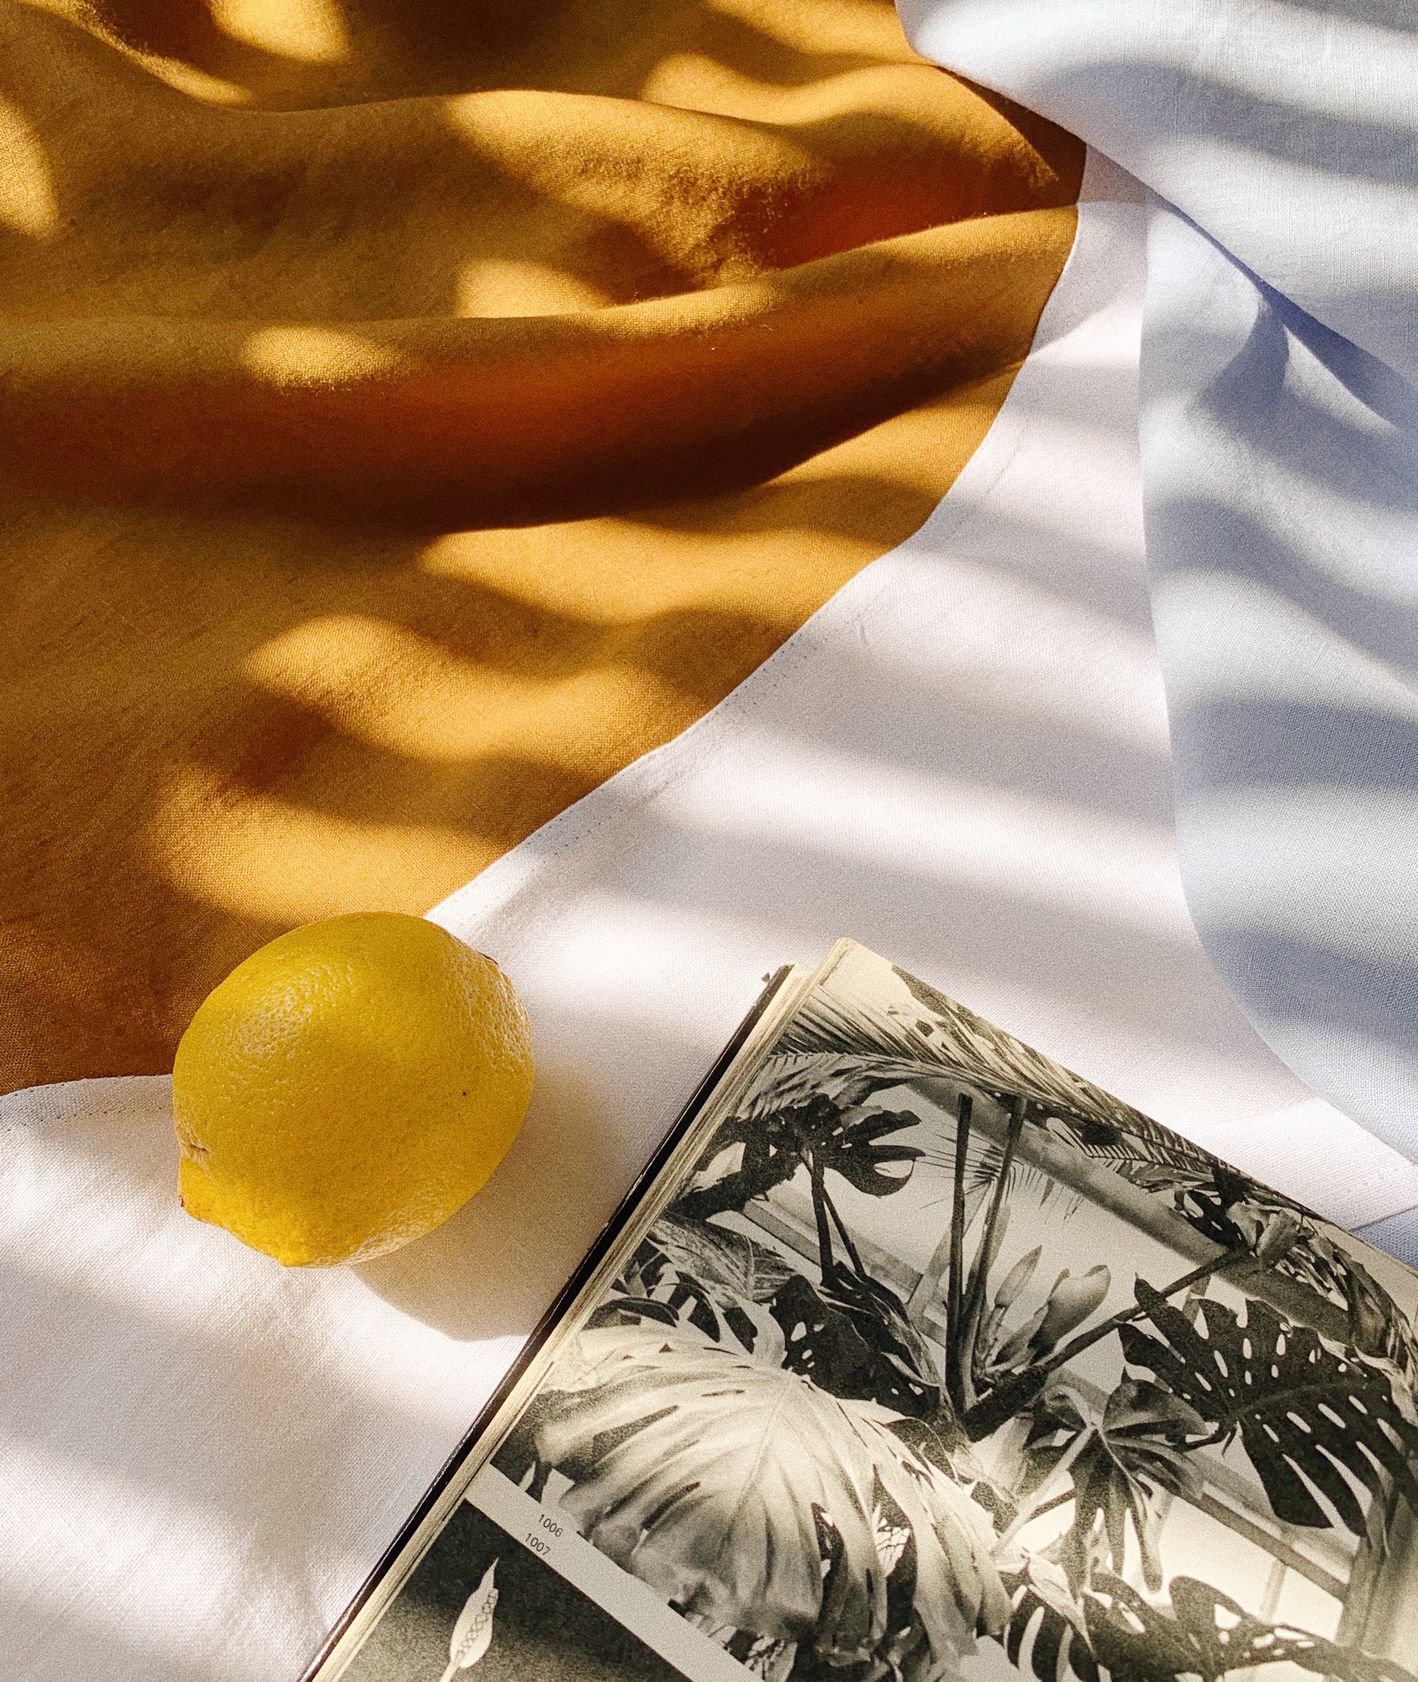 Lniany, kremowo pomarańczowy, plażowy ręcznik marki Lazy Beaches, leżący na nim album z czarno białymi zdjęciami roślin, cytryna (fot. Eliza Dunajska/Lazy Beaches)